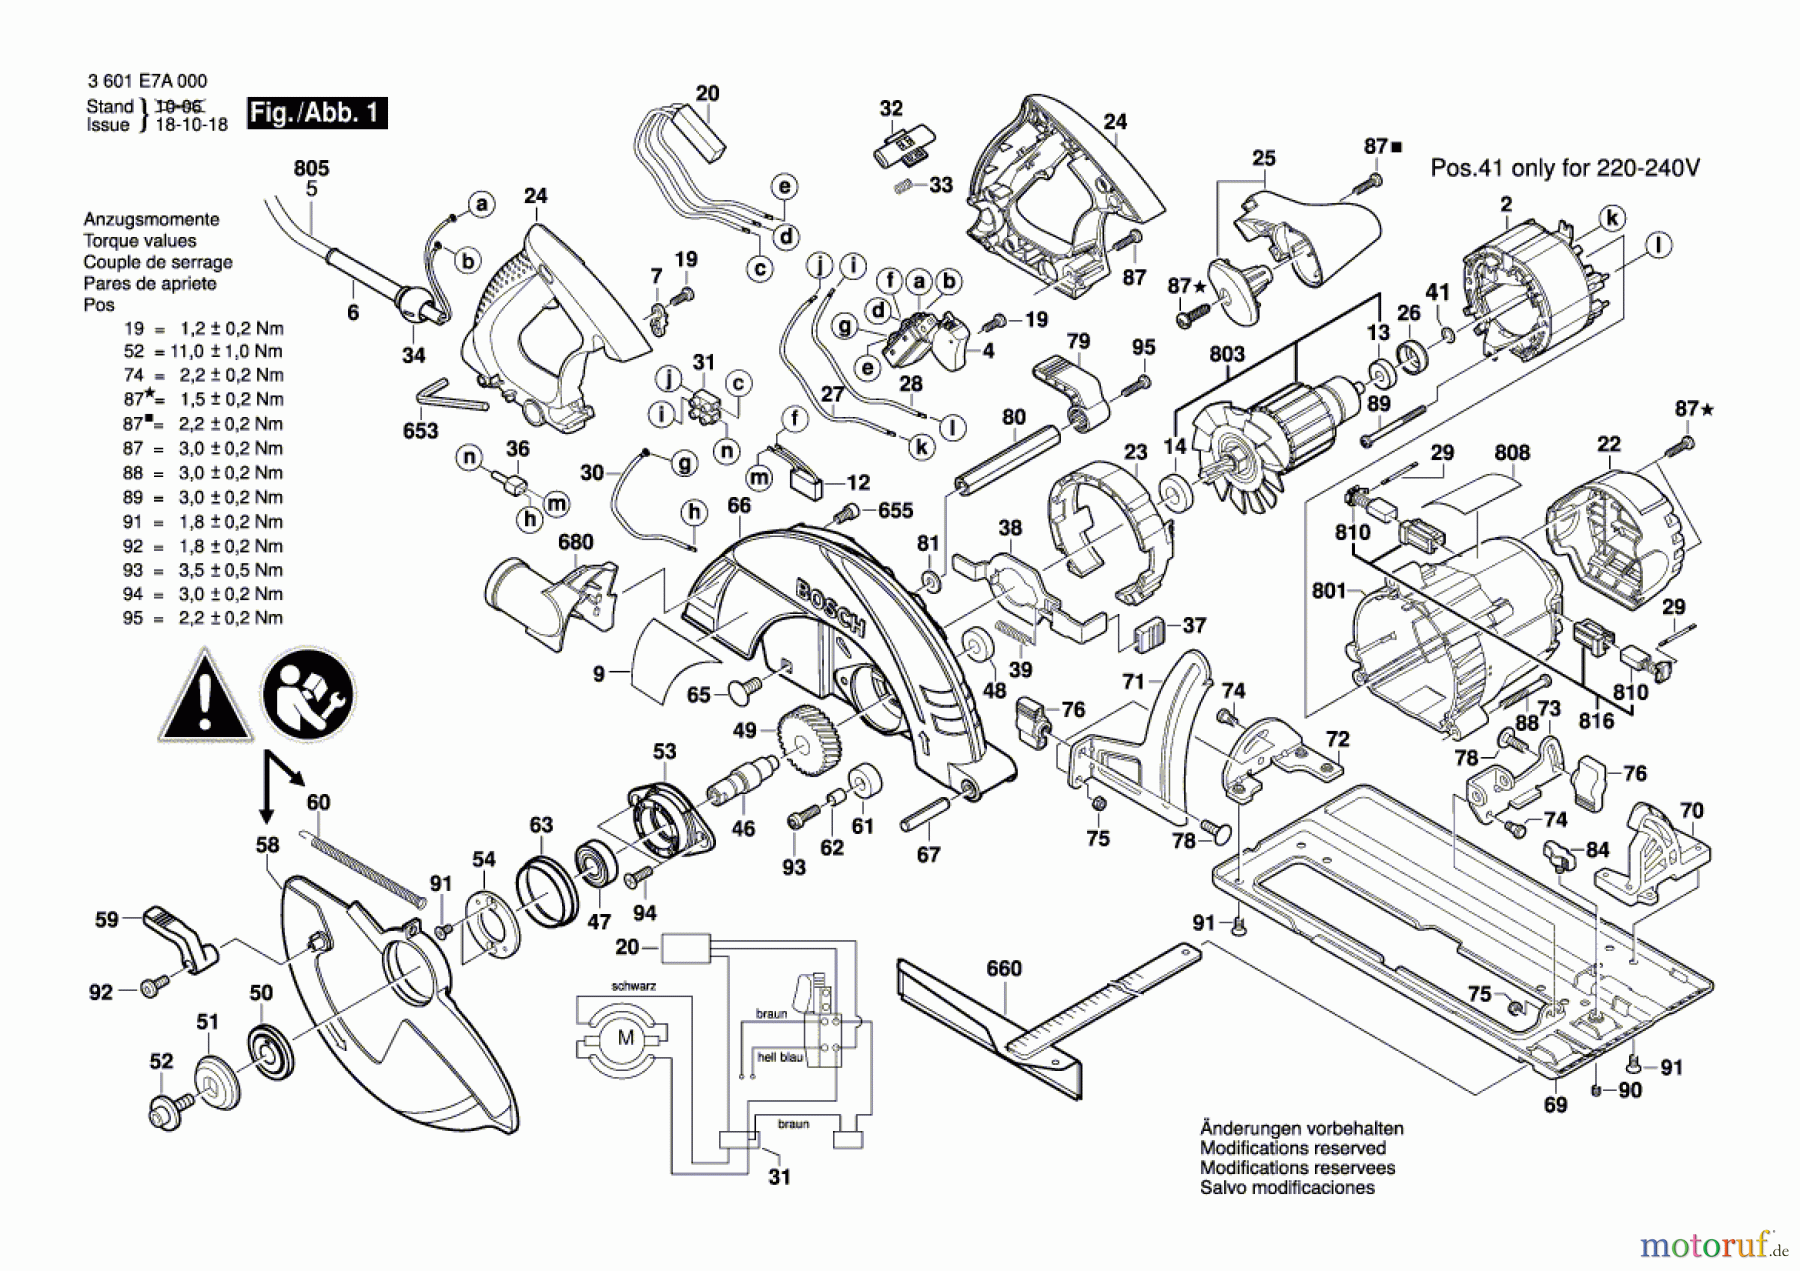  Bosch Werkzeug Handkreissäge GKS 85 Seite 1